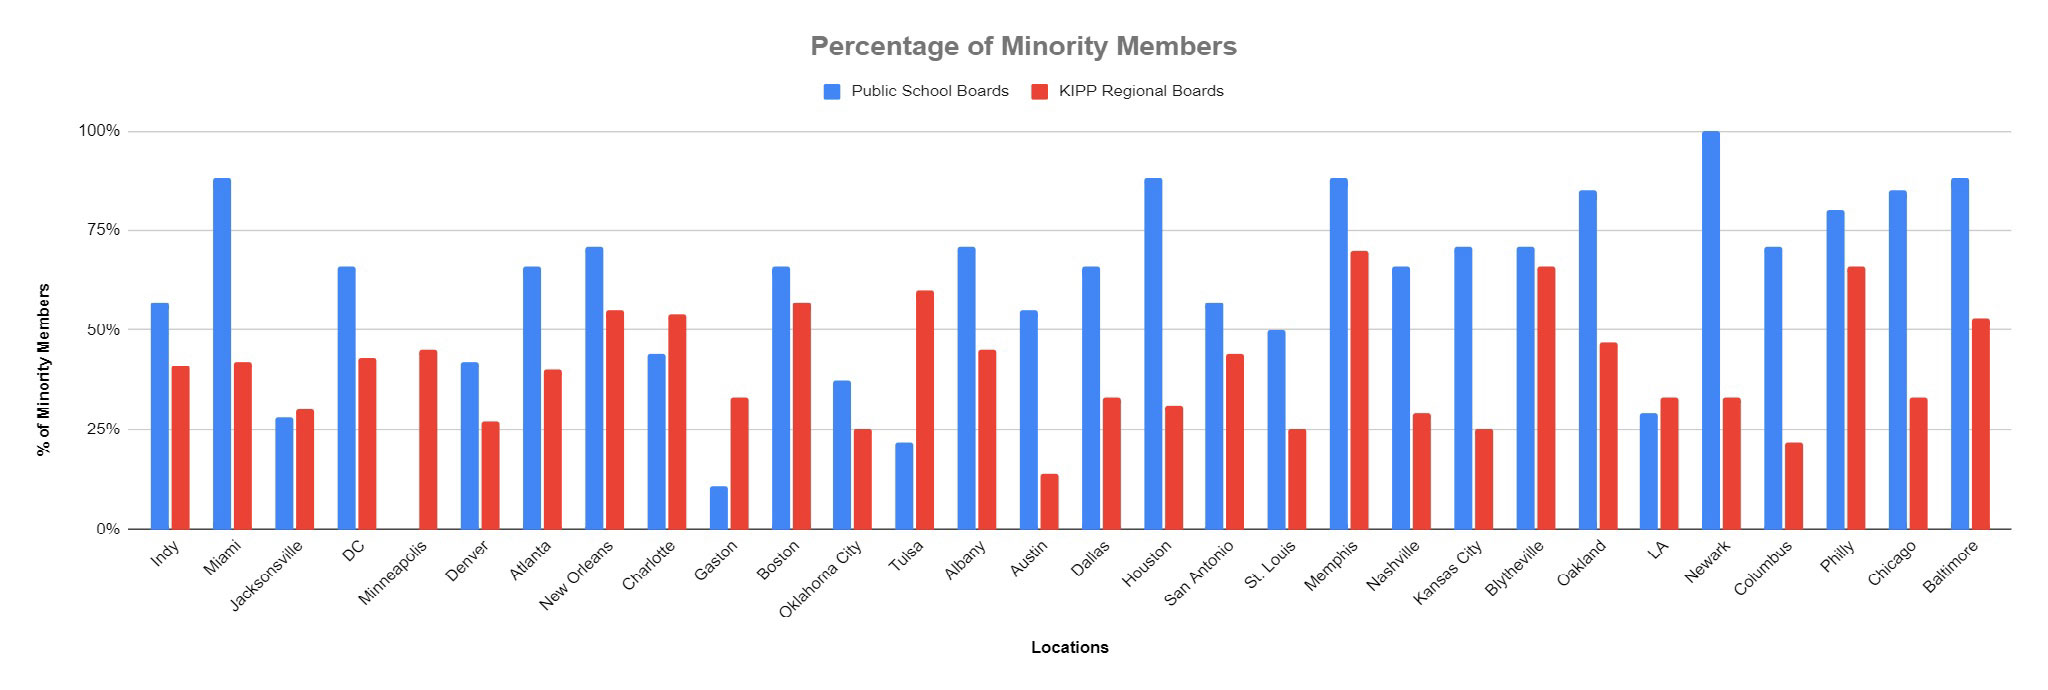 Percentage of Minority Members